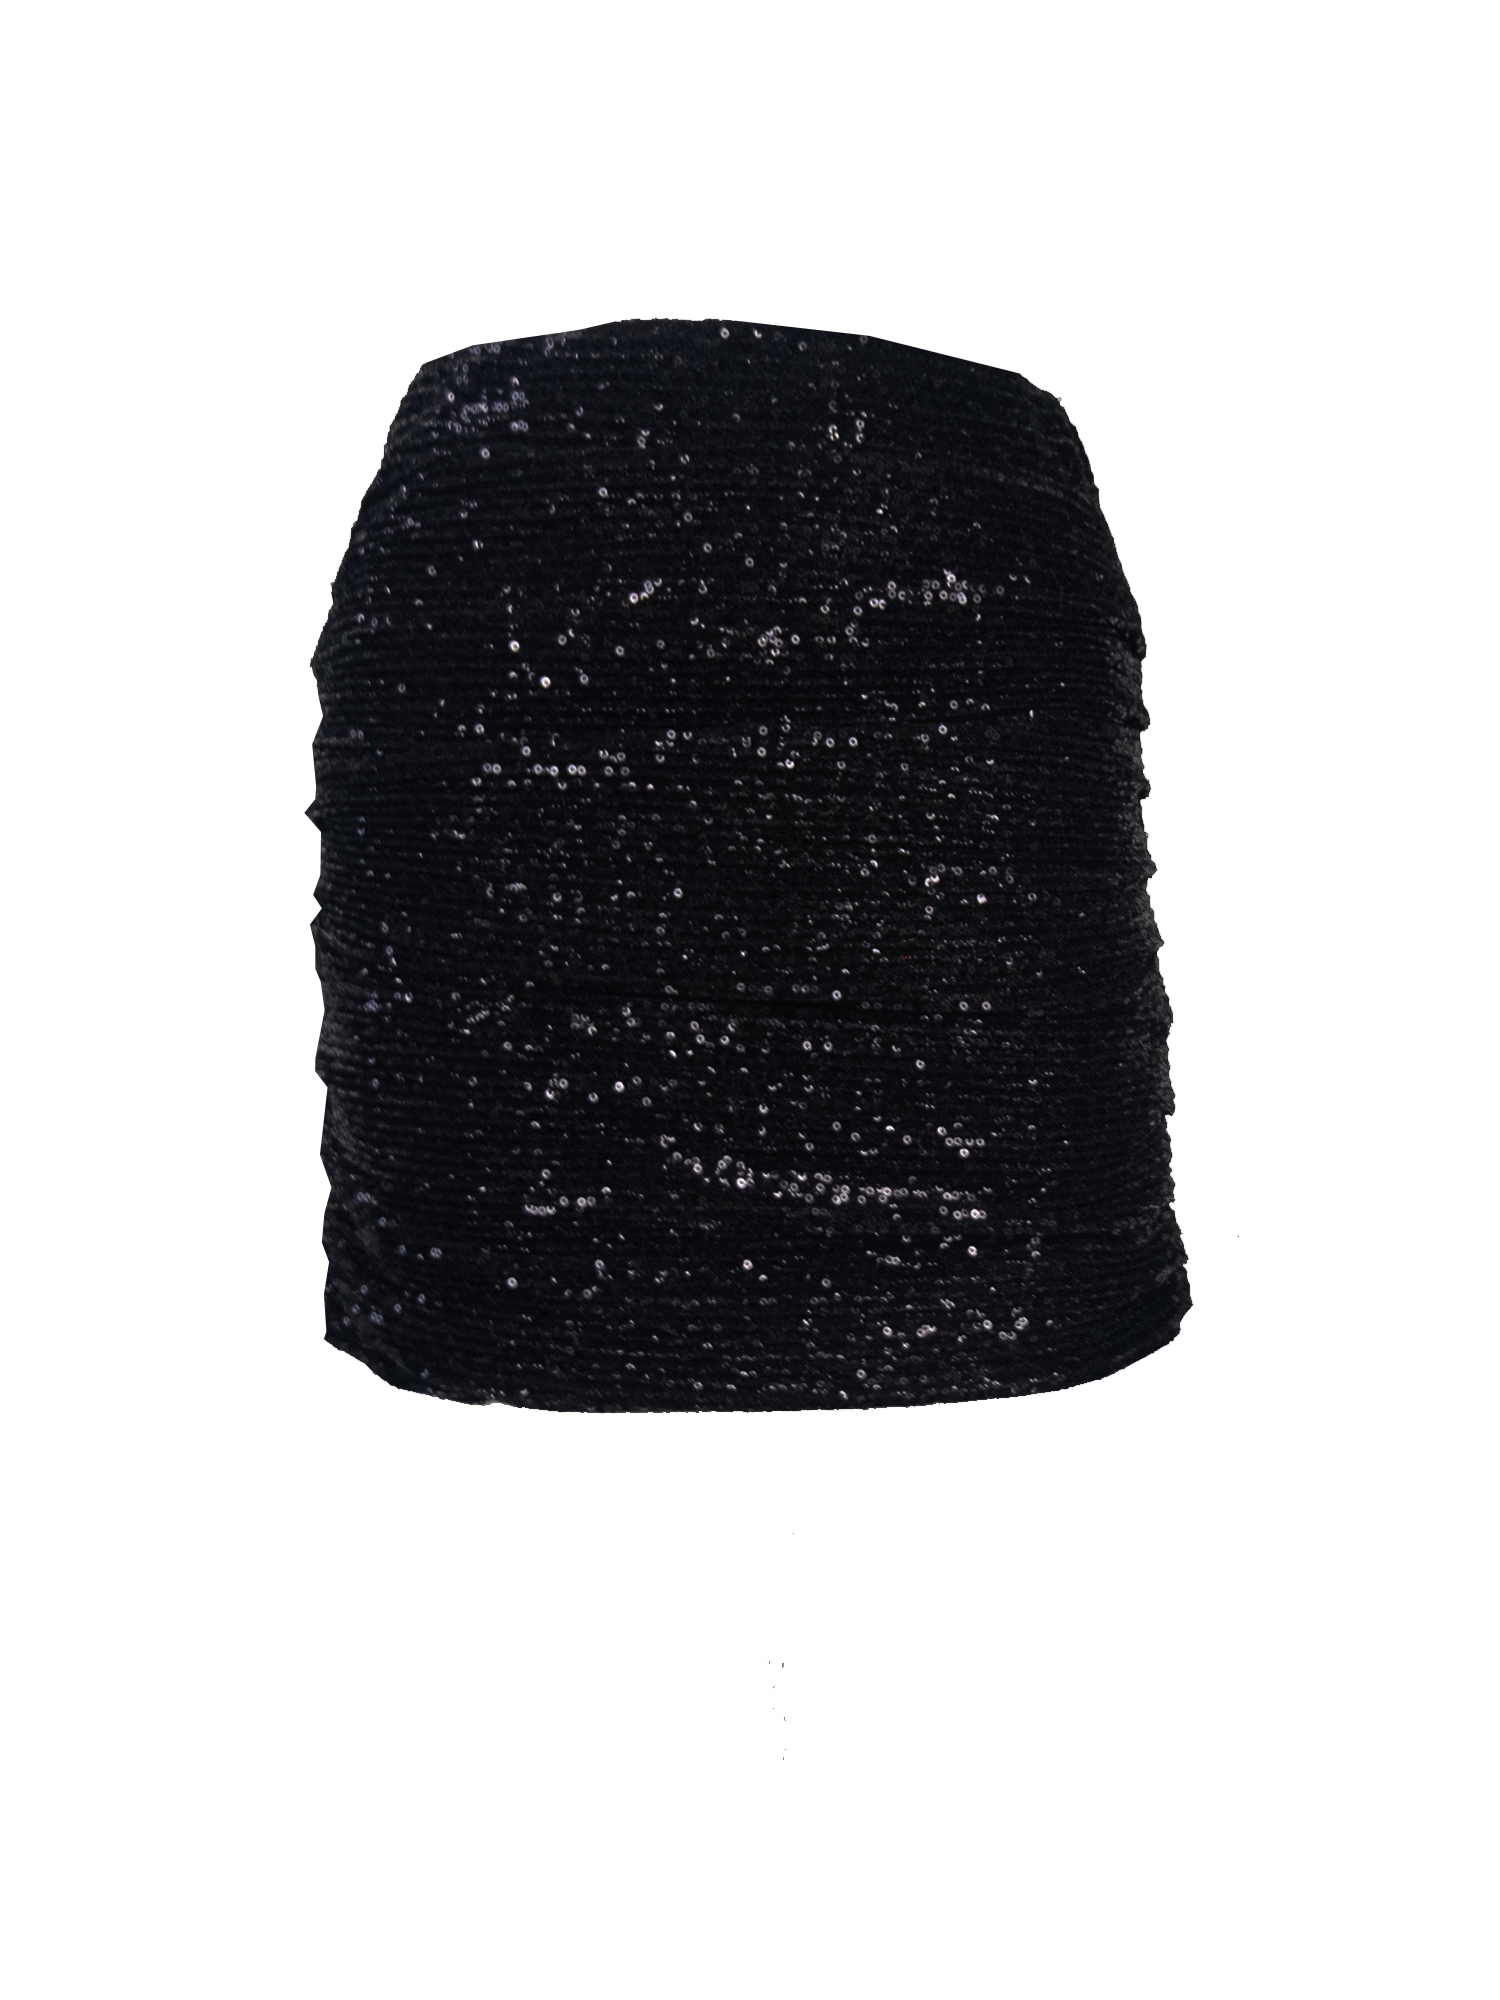 NINA - mini skirt in black sequins